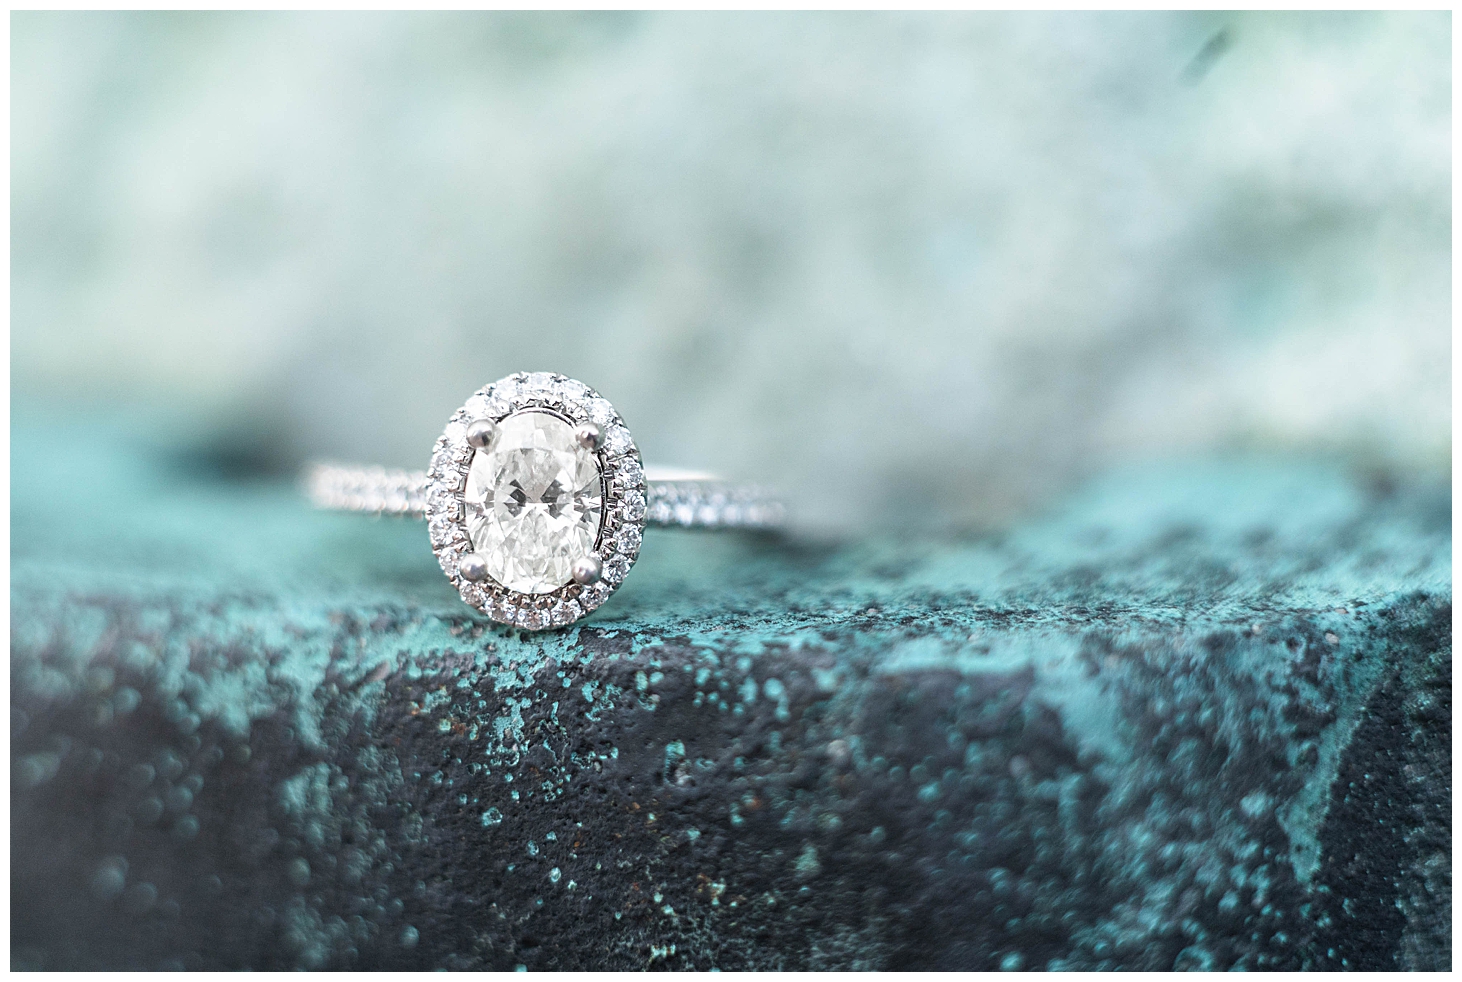 Engagement Ring Image by Phoenix Wedding Photographer